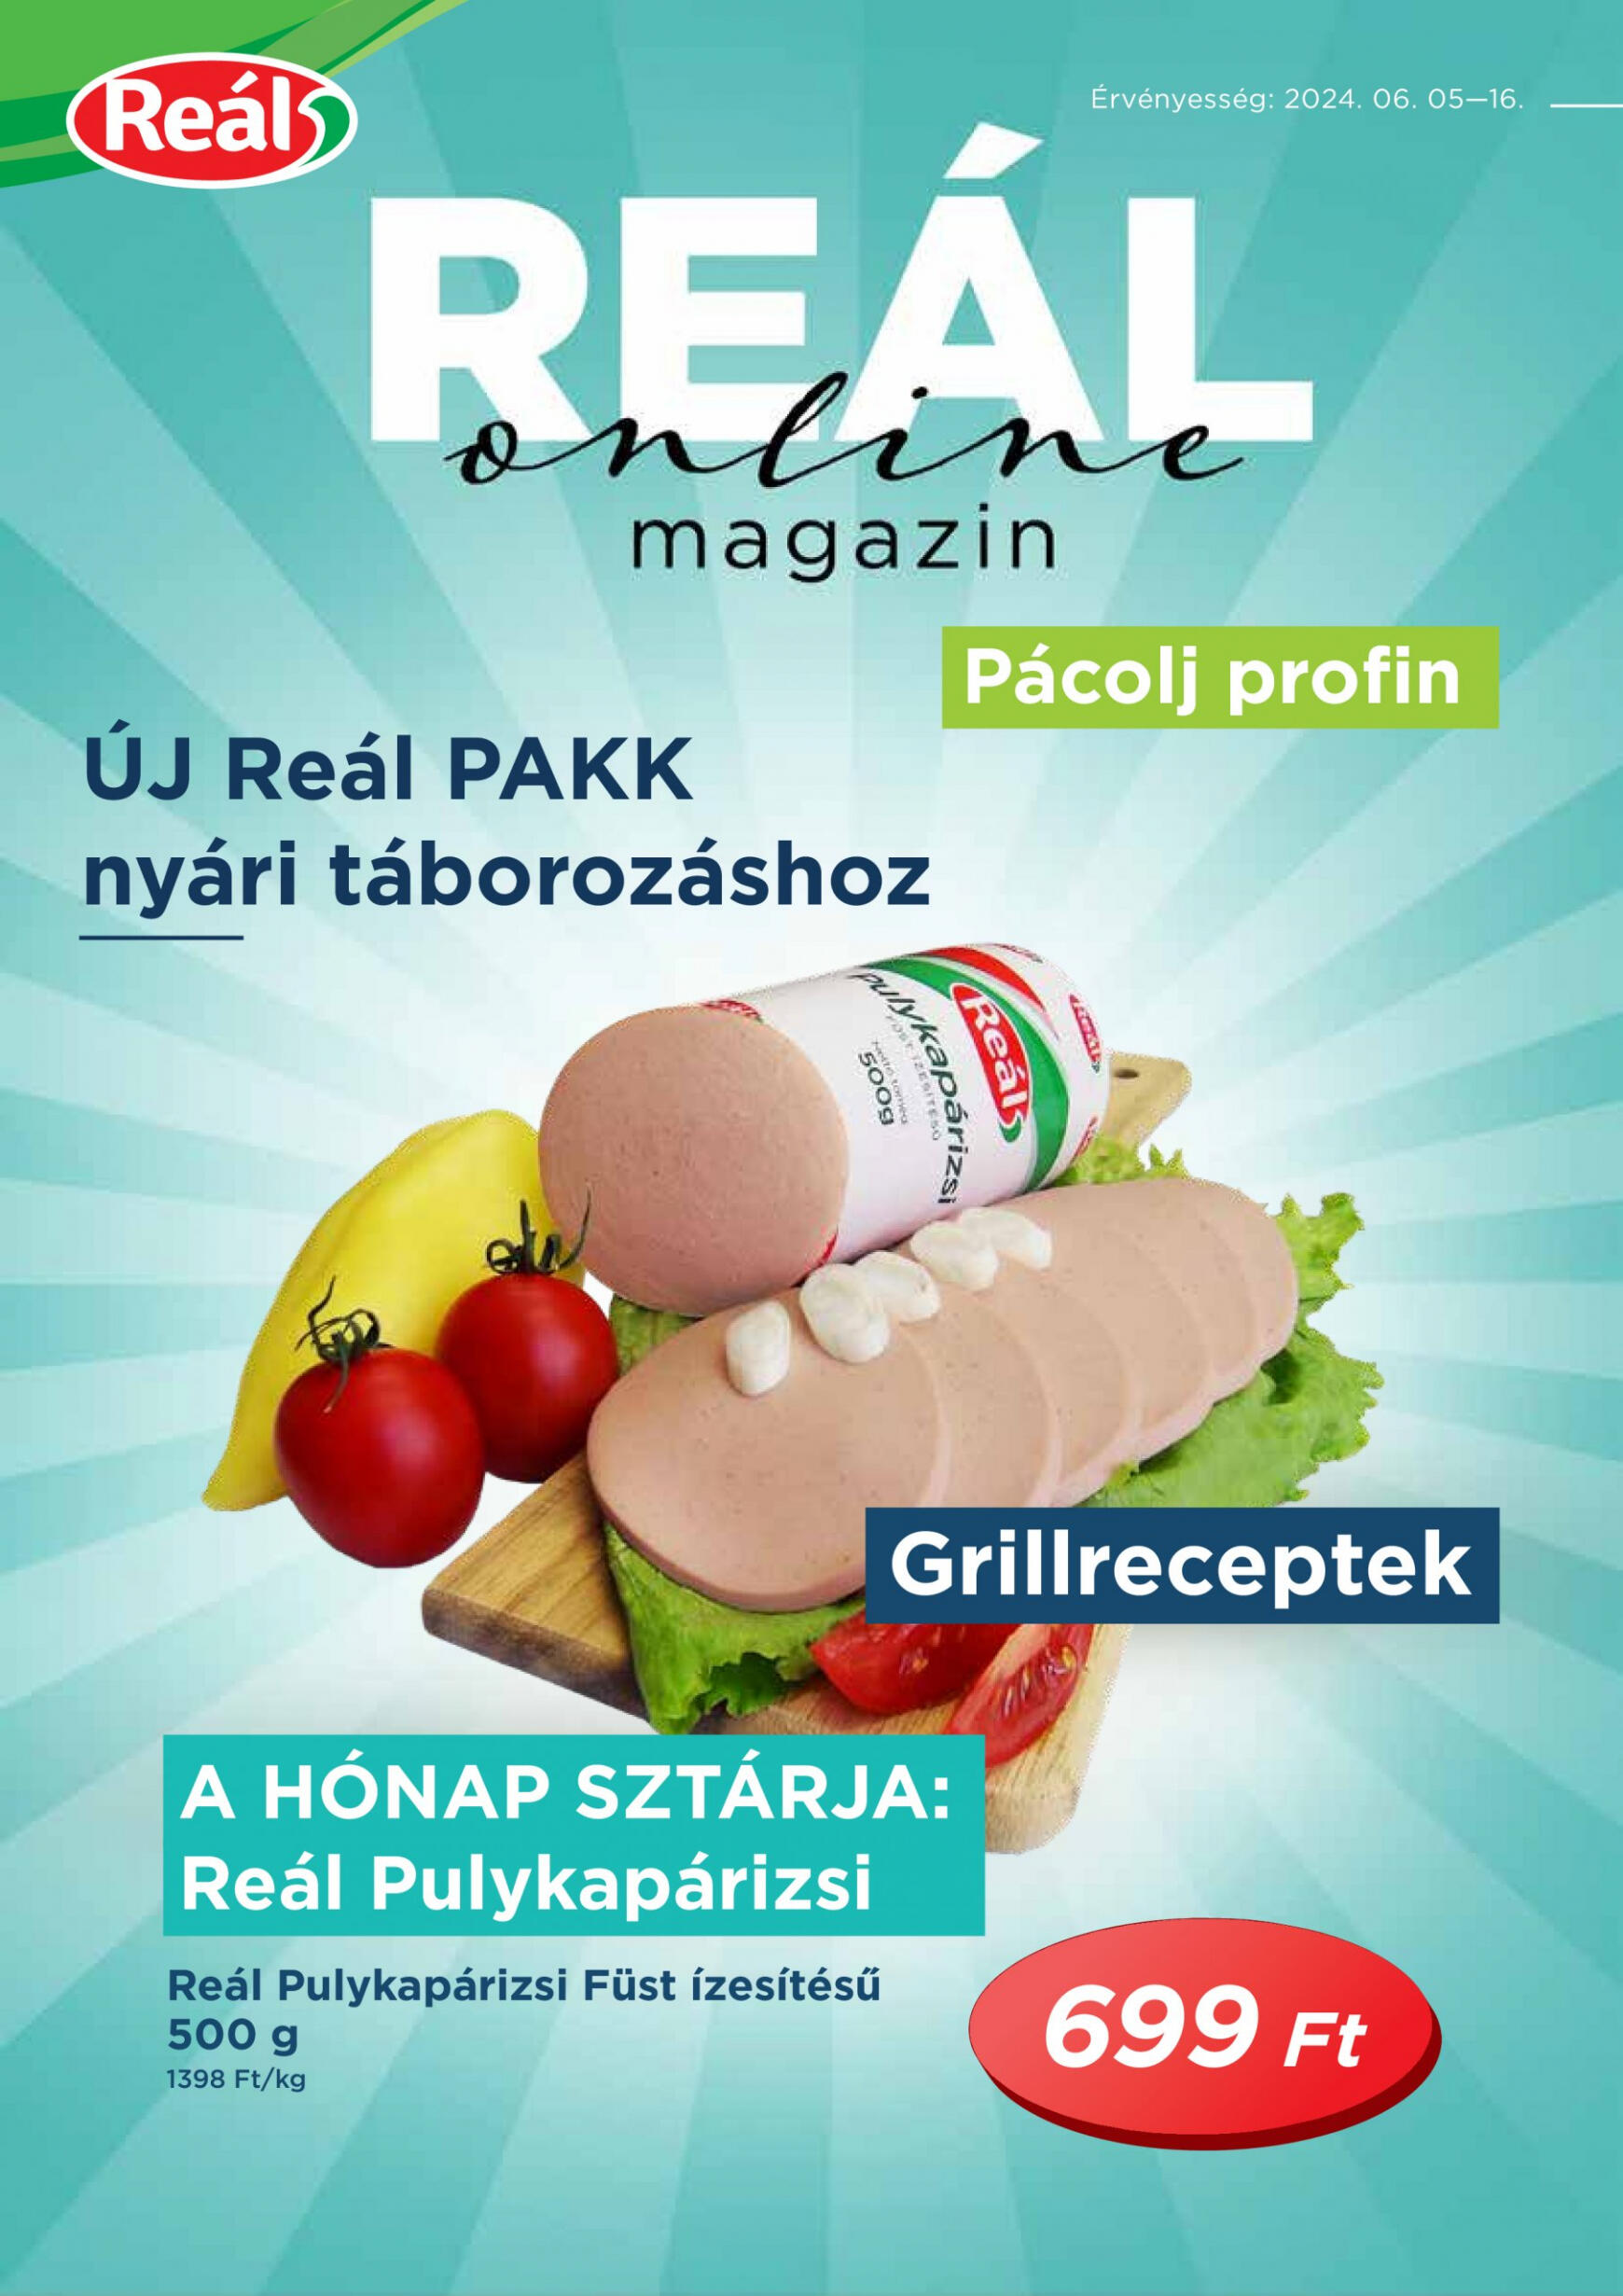 real - Aktuális újság Reál - Online Magazin 06.05. - 06.16.